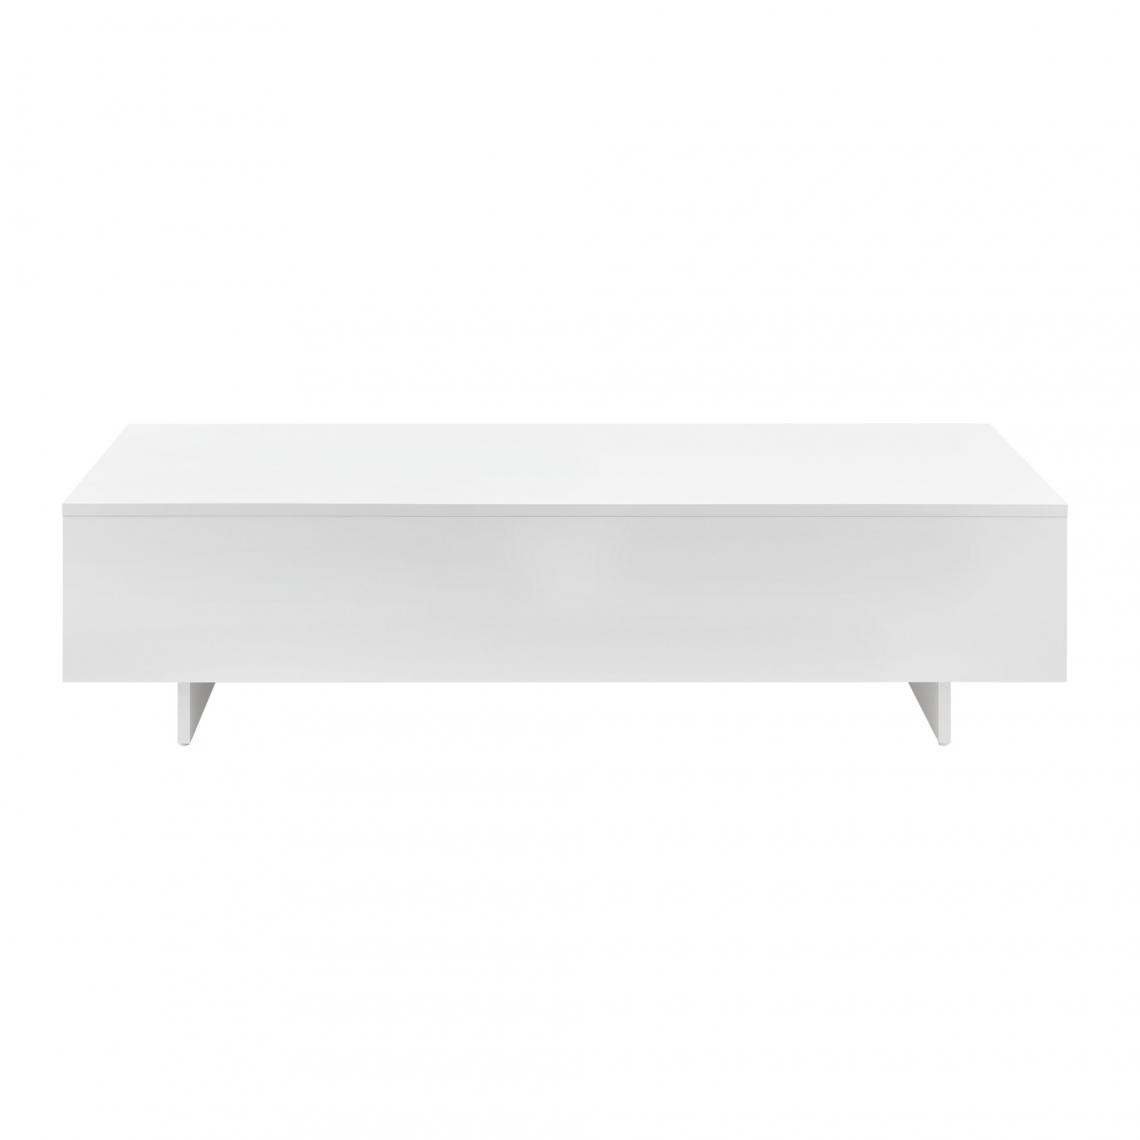 Helloshop26 - Table basse de salon panneau de particules mélaminé 115 cm blanc brillant 03_0006137 - Tables basses